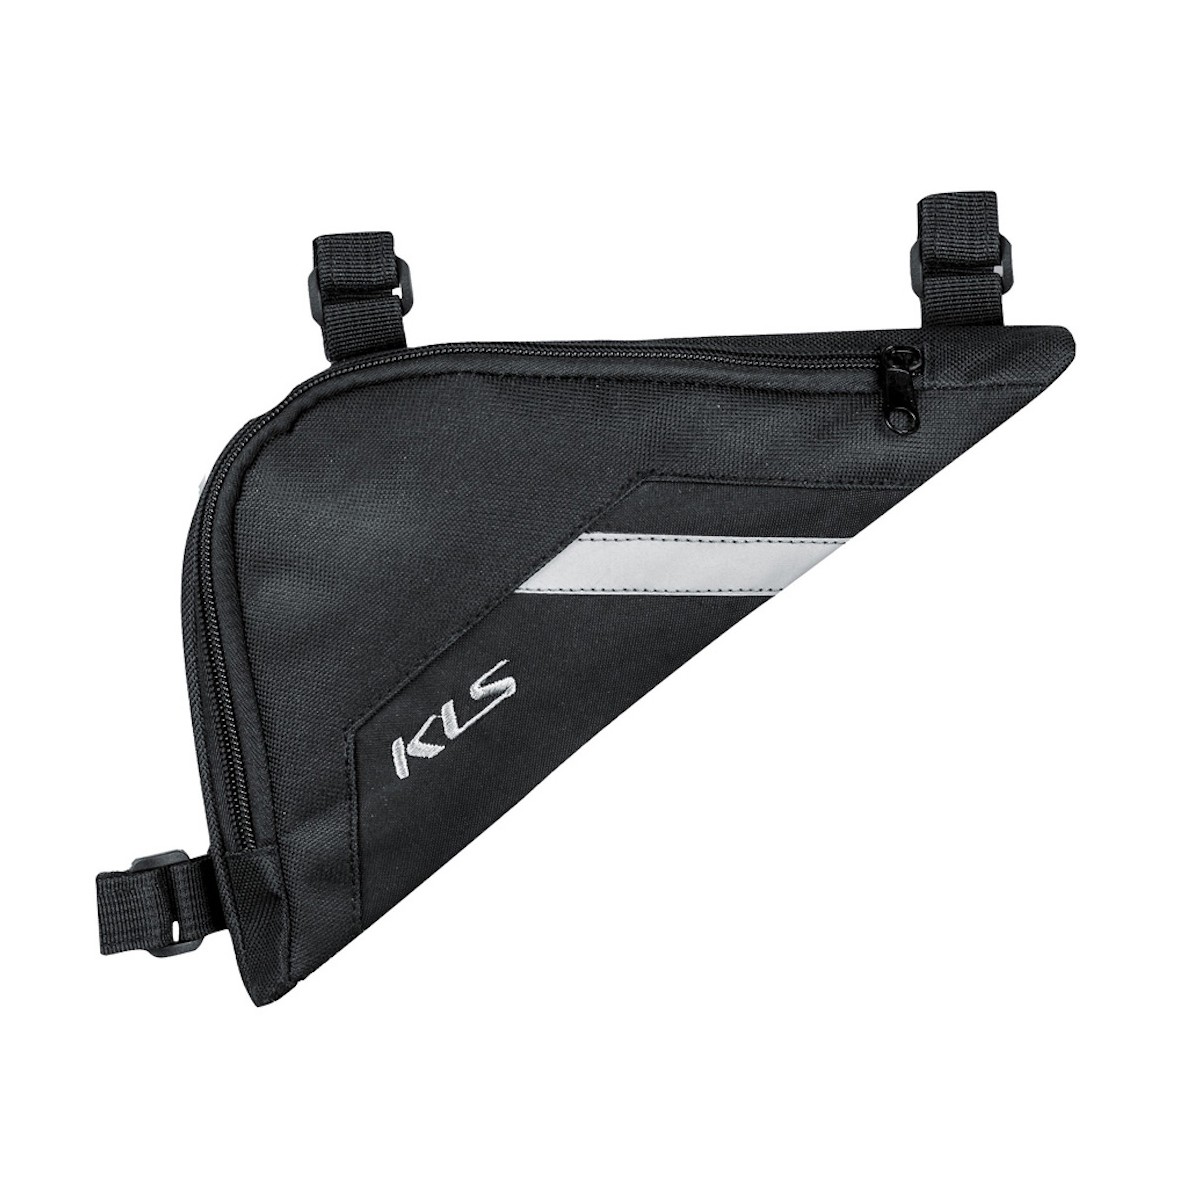 KLS TRIANGLE ECO LARGE 2.5L frame bag - black